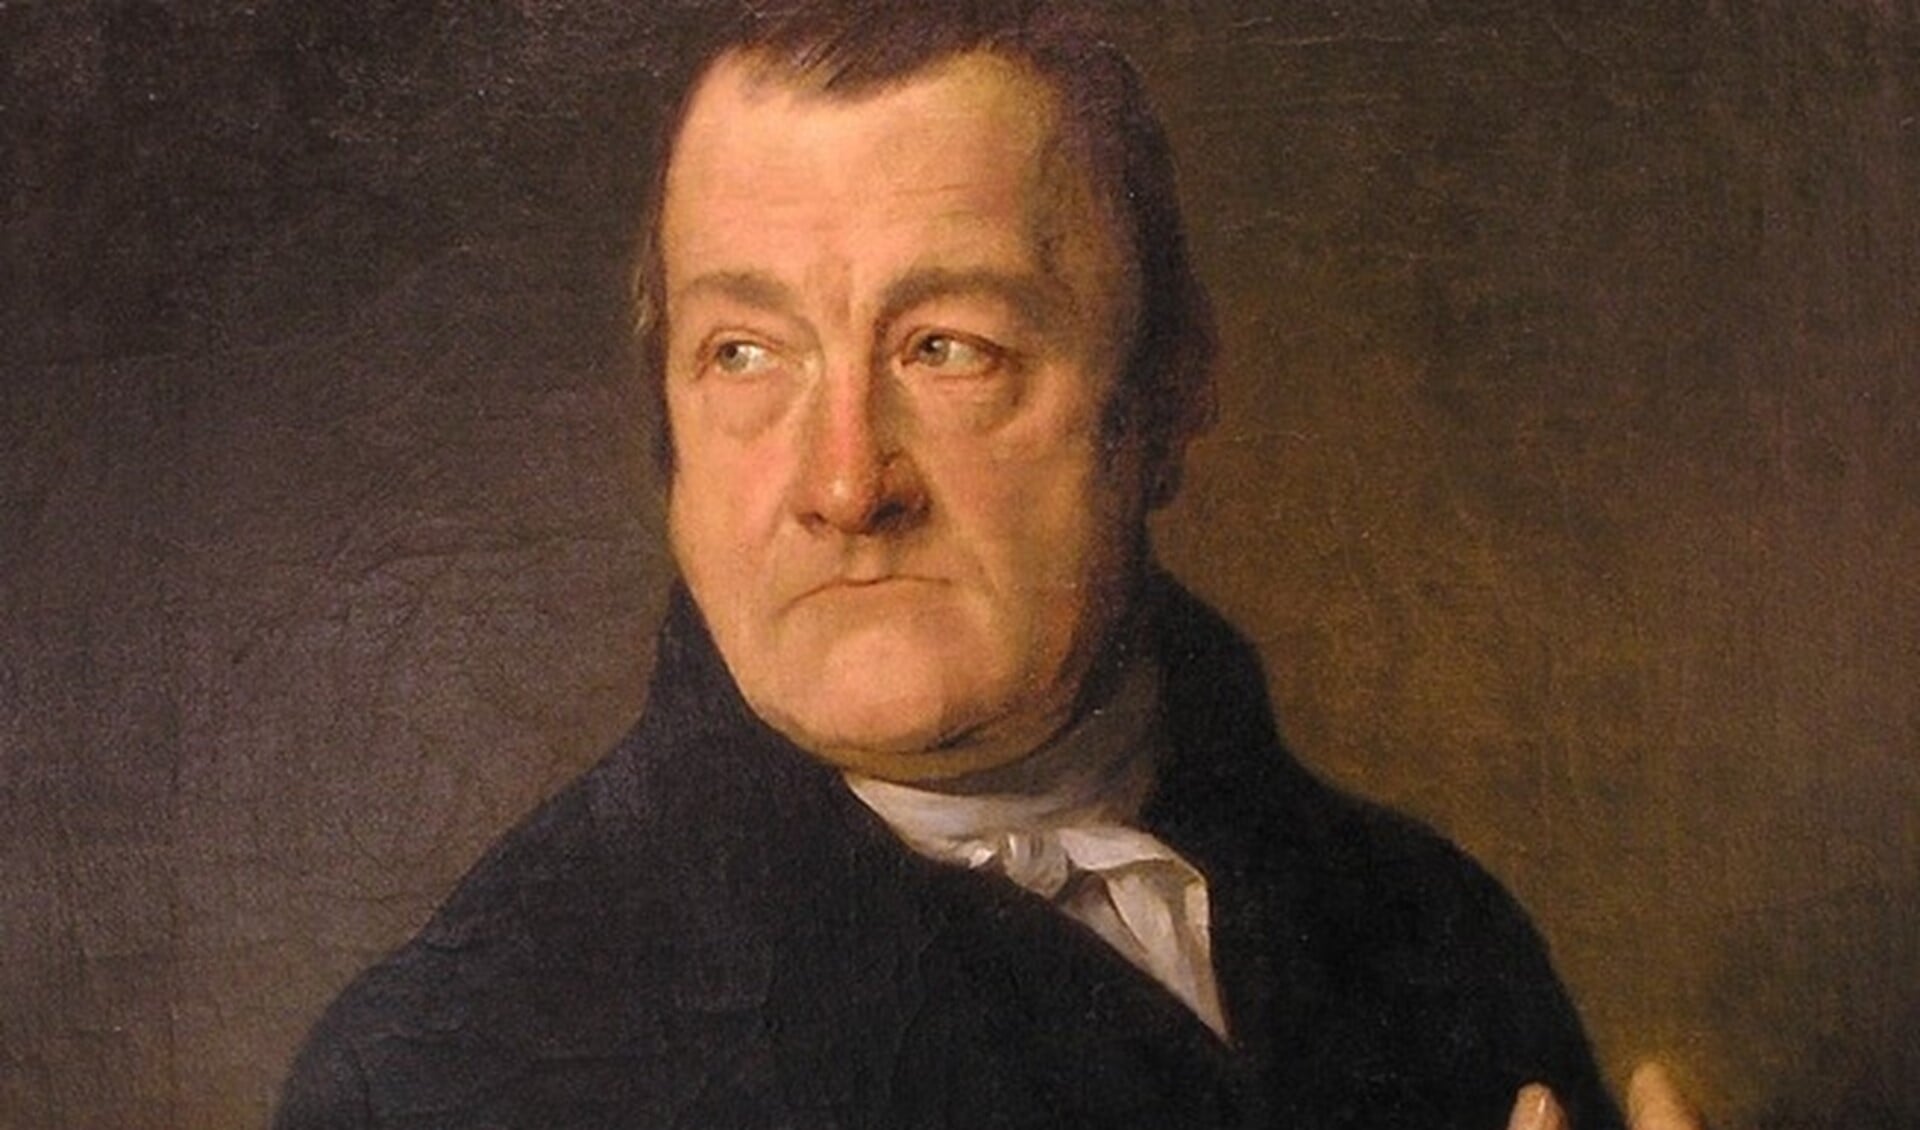 Burgemeester Coenraad van Eijk (1783-1841), toen nog schout genoemd.